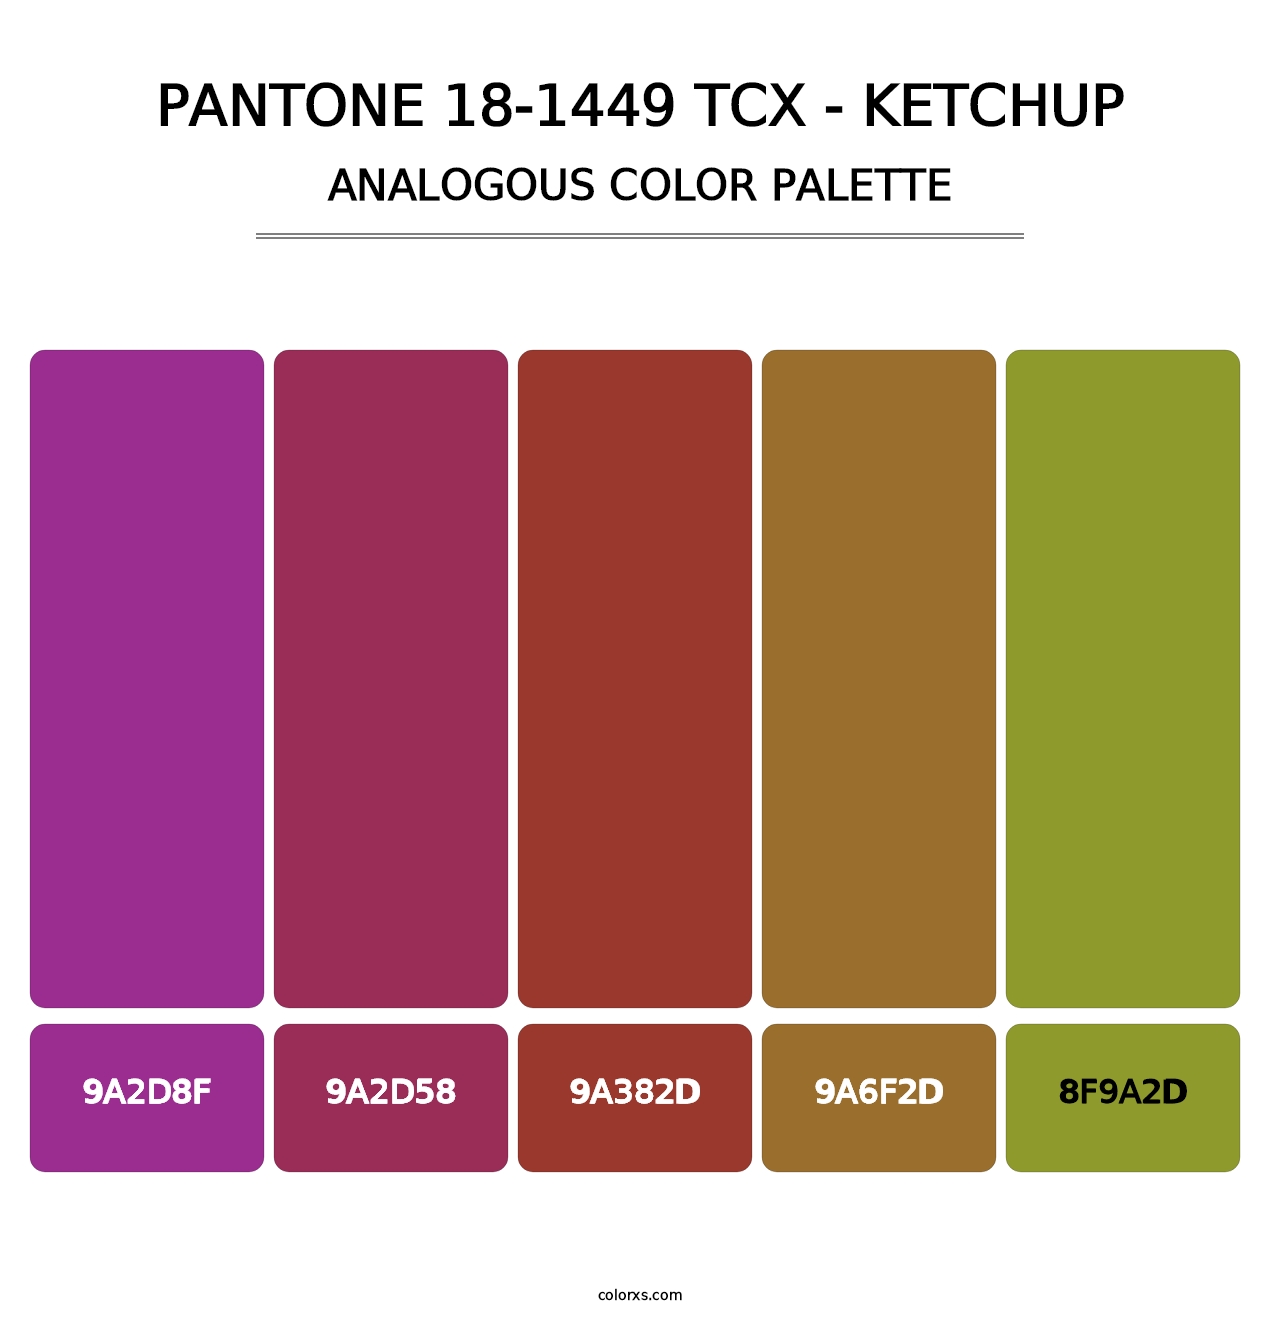 PANTONE 18-1449 TCX - Ketchup - Analogous Color Palette